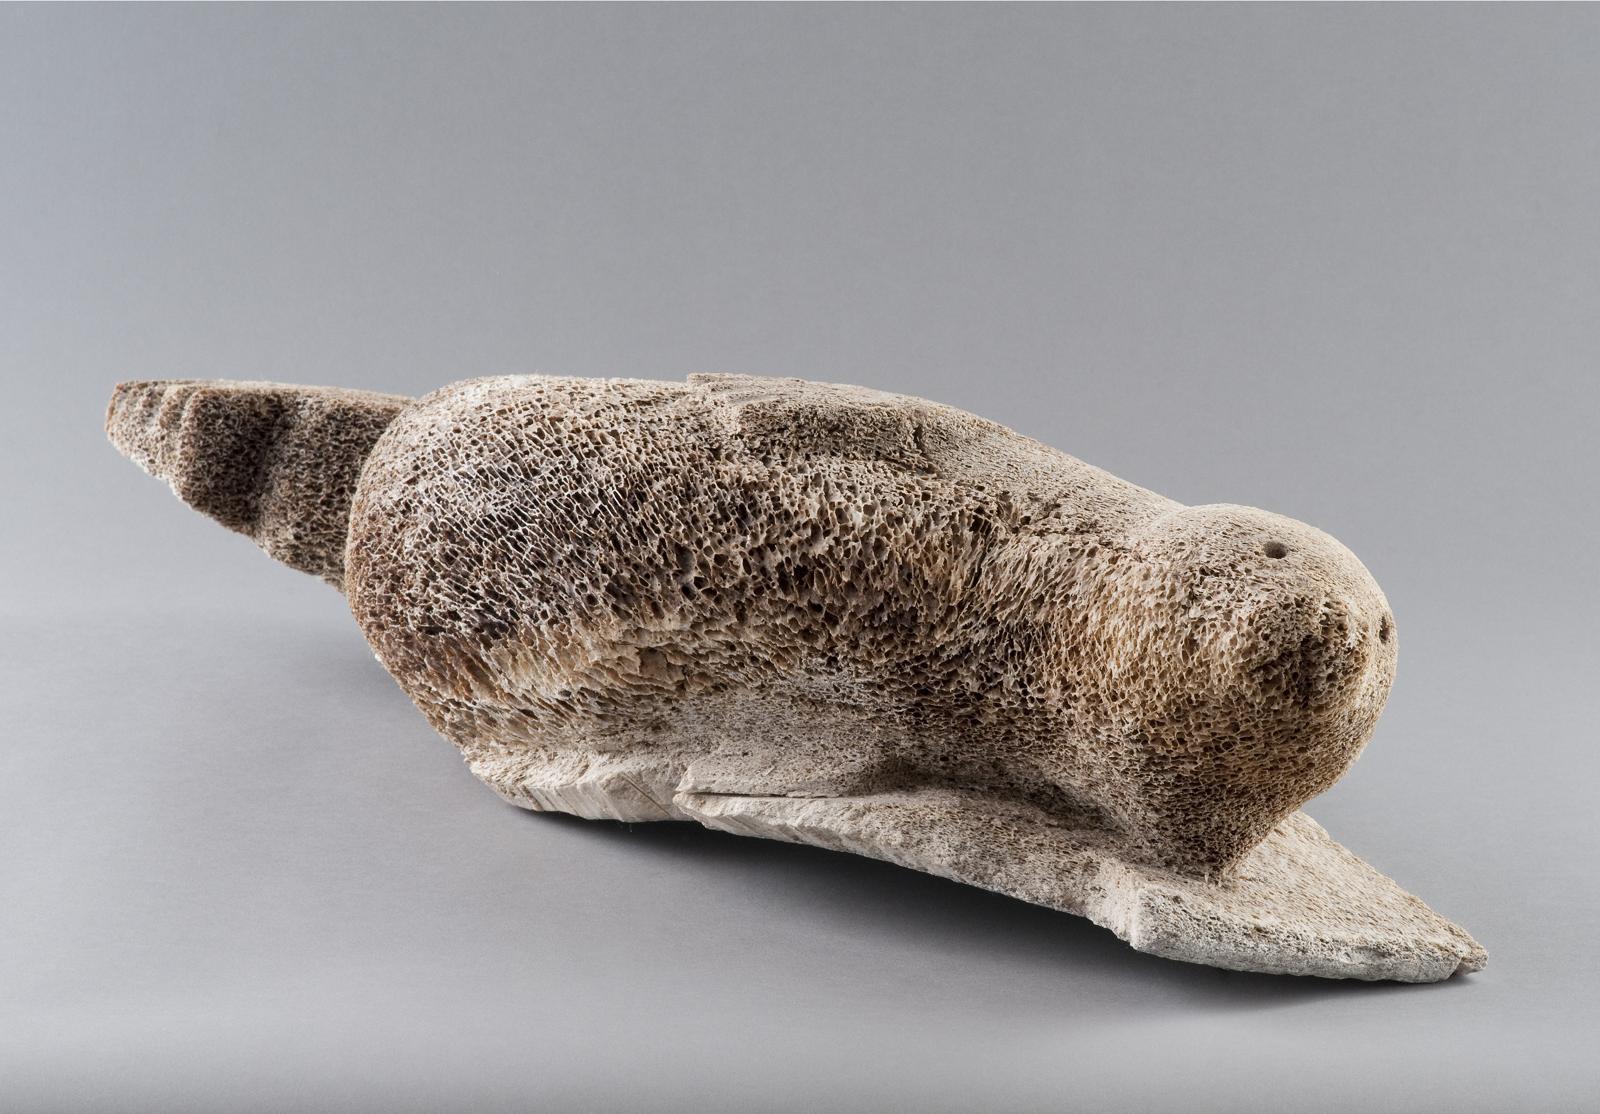 Marriah Quillaaq - Basking Seal